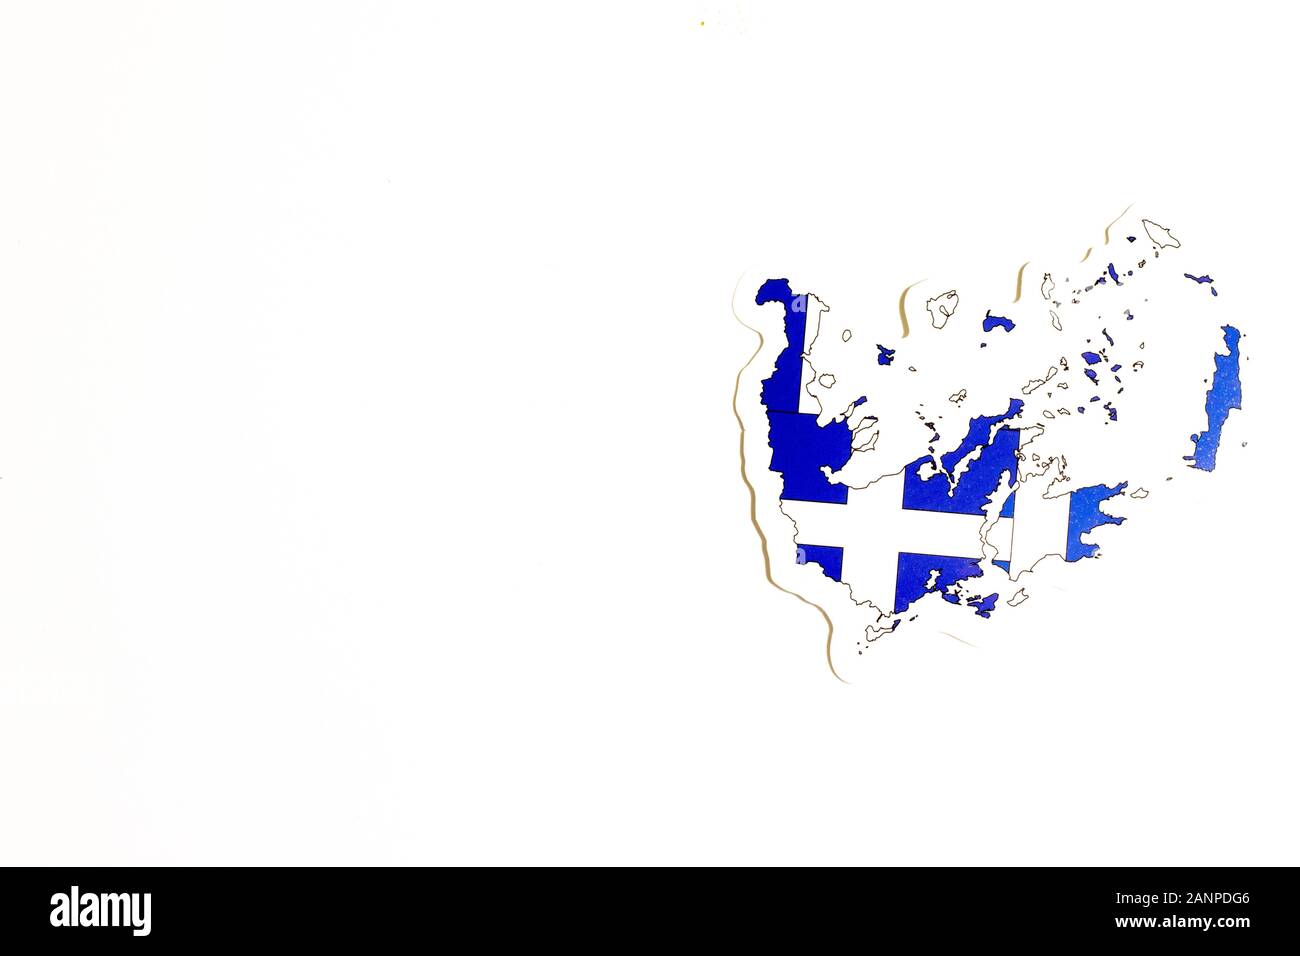 Los Angeles, Kalifornien, USA - 17. Januar 2020: Nationalflaggen Griechenlands. Länderumriss auf weißem Hintergrund mit Kopierbereich. Politische Illustration Stockfoto